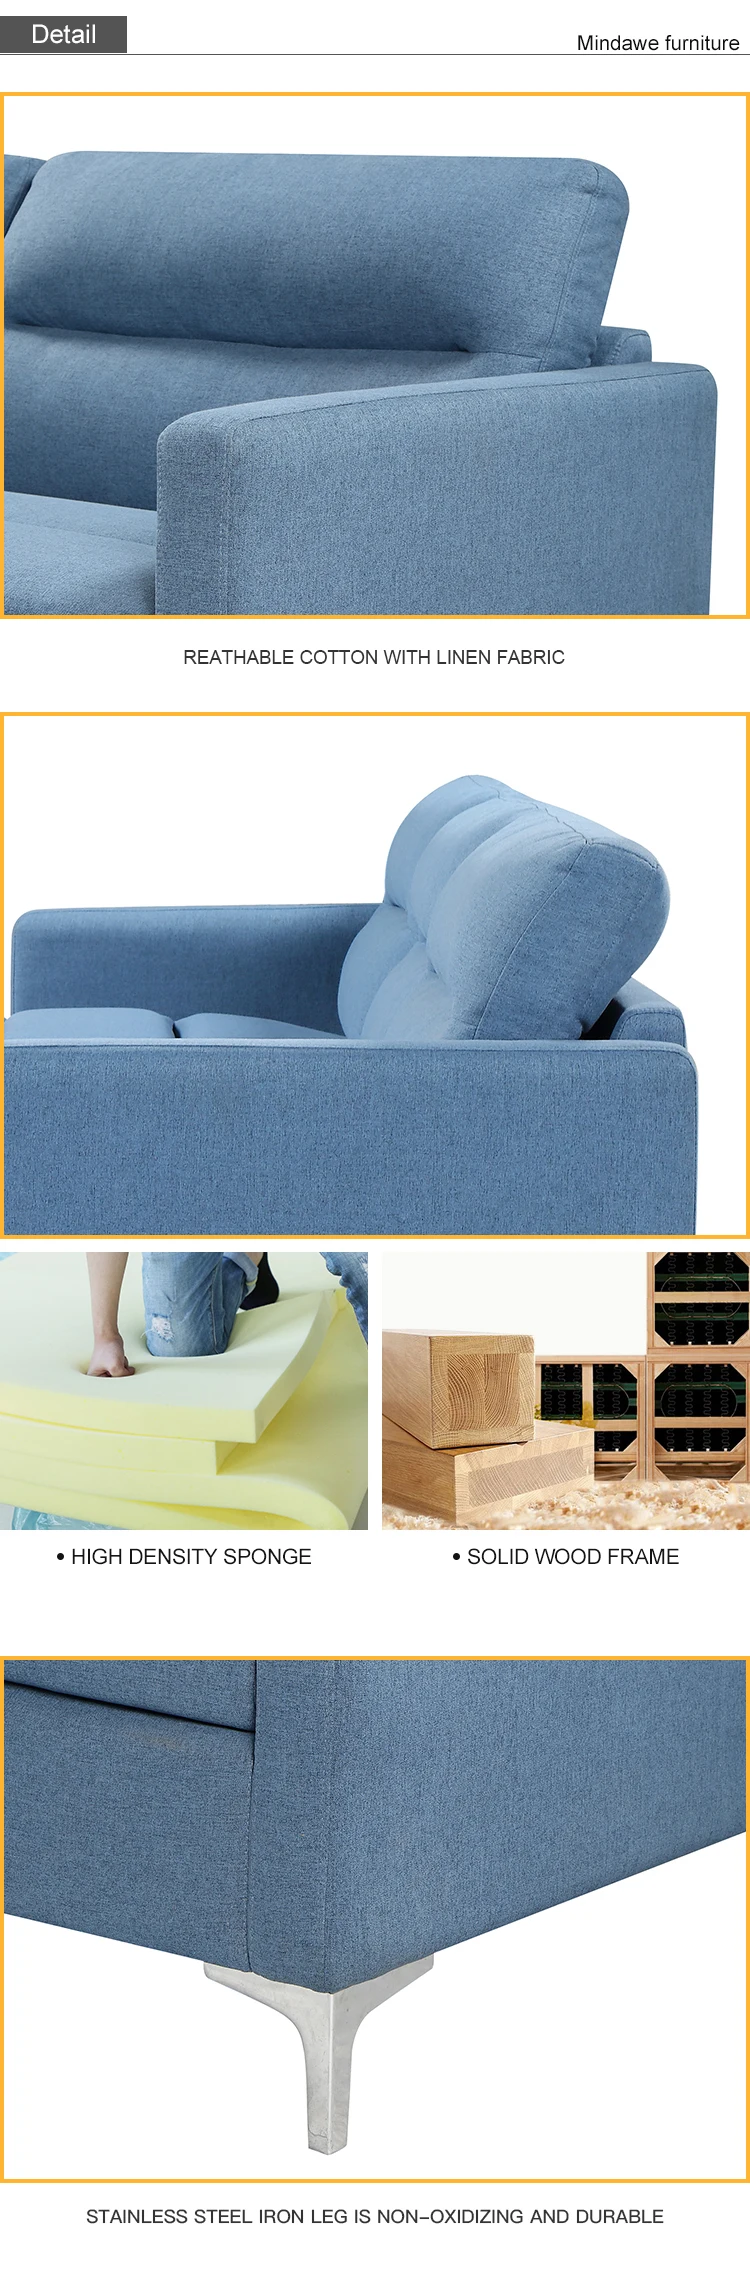 Import furniture from china alibaba sofa furniture sofa set 7 seater fabric sofa